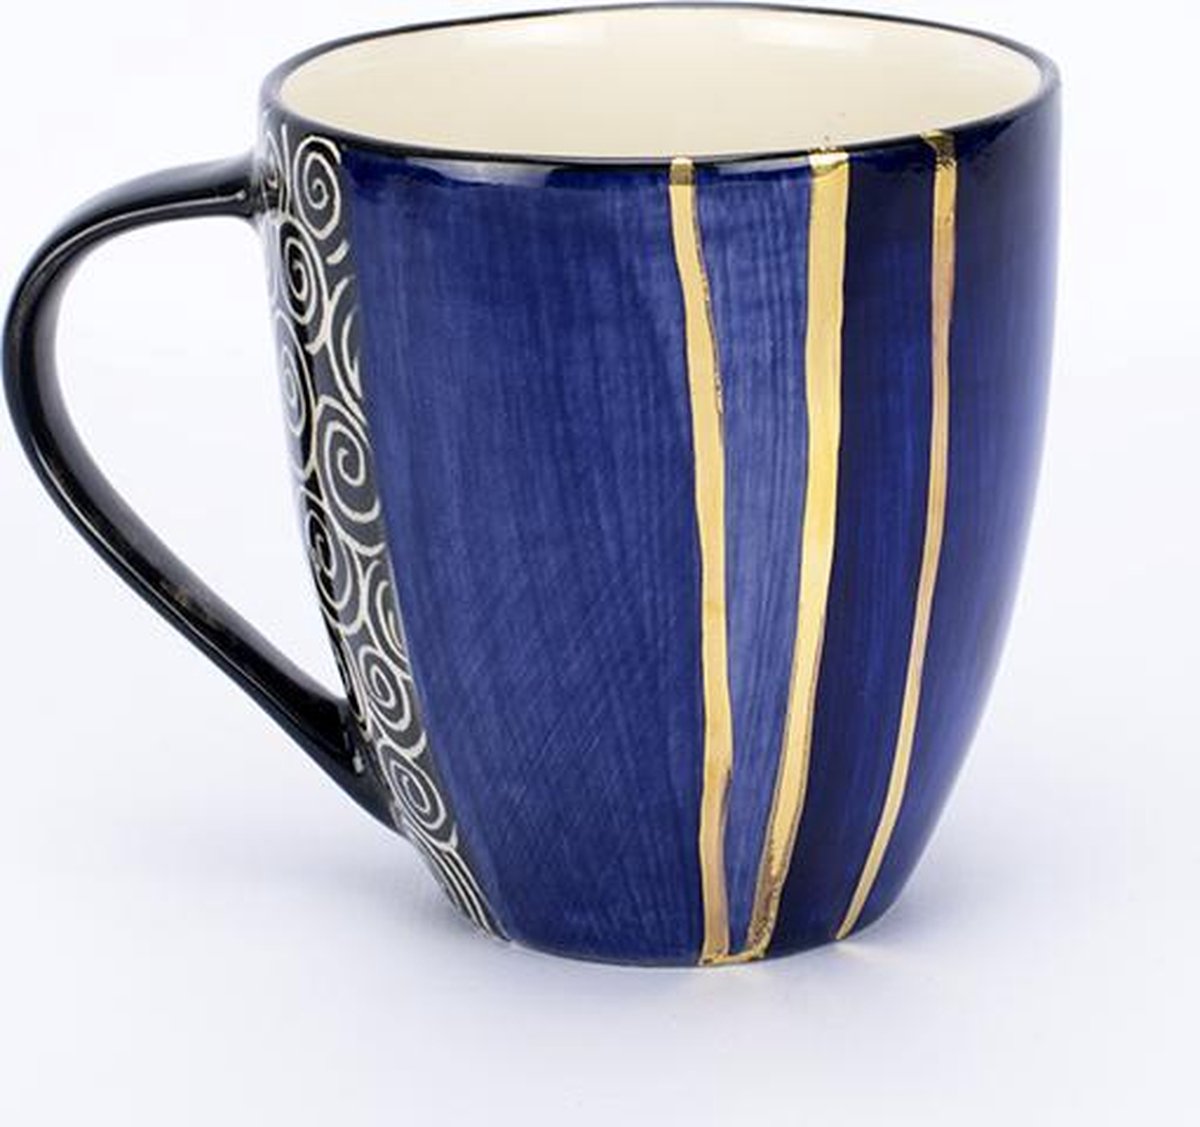 Koffiemok / Theebeker - Koffiekopjes - Letsopa Ceramics - Model: Paars-Oranje | Handgemaakt in Zuid Afrika - hoogwaardig keramiek - speciaal gemaakt door Letsopa Ceramics voor Nwabisa African Art - Prachtig om kado te doen of zelf te gebruiken